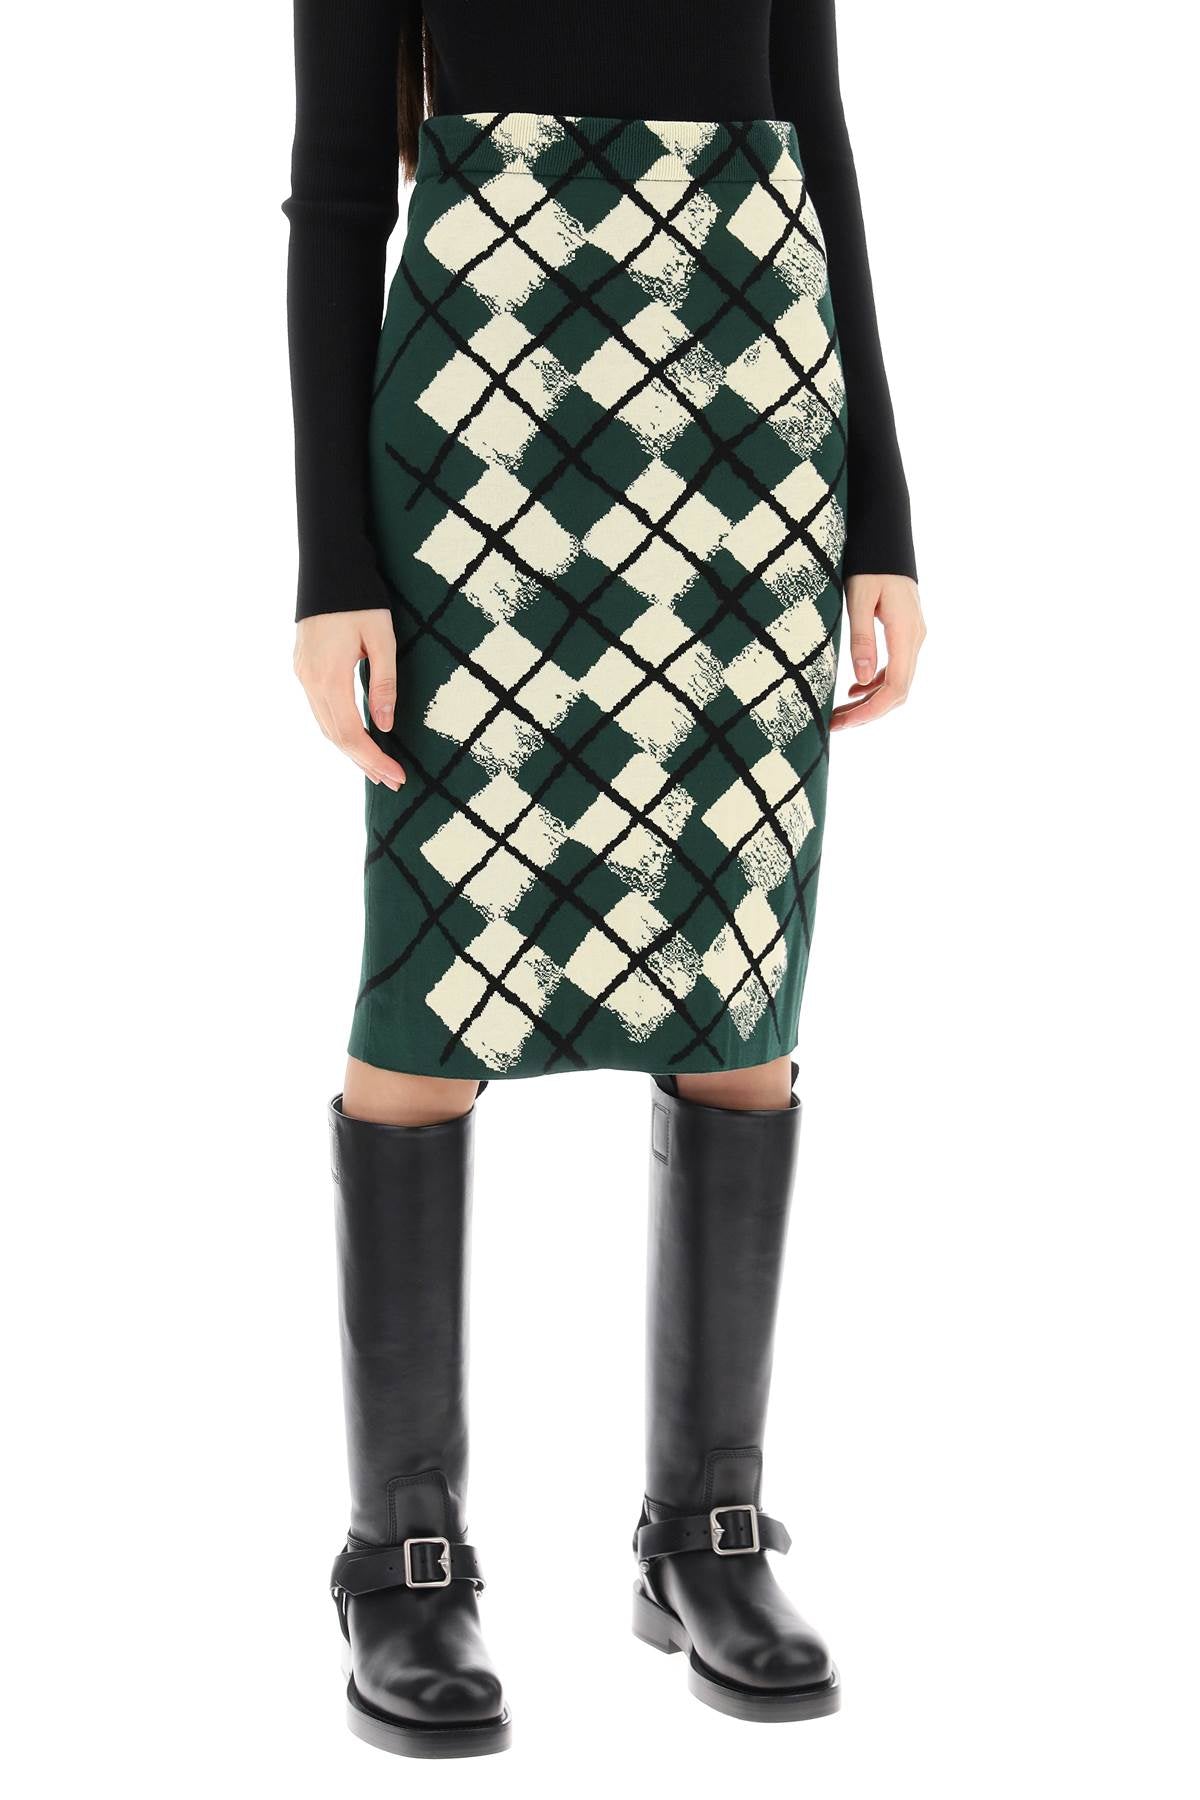 Shop Burberry Elegant Green Diamond Jacquard Skirt For Women